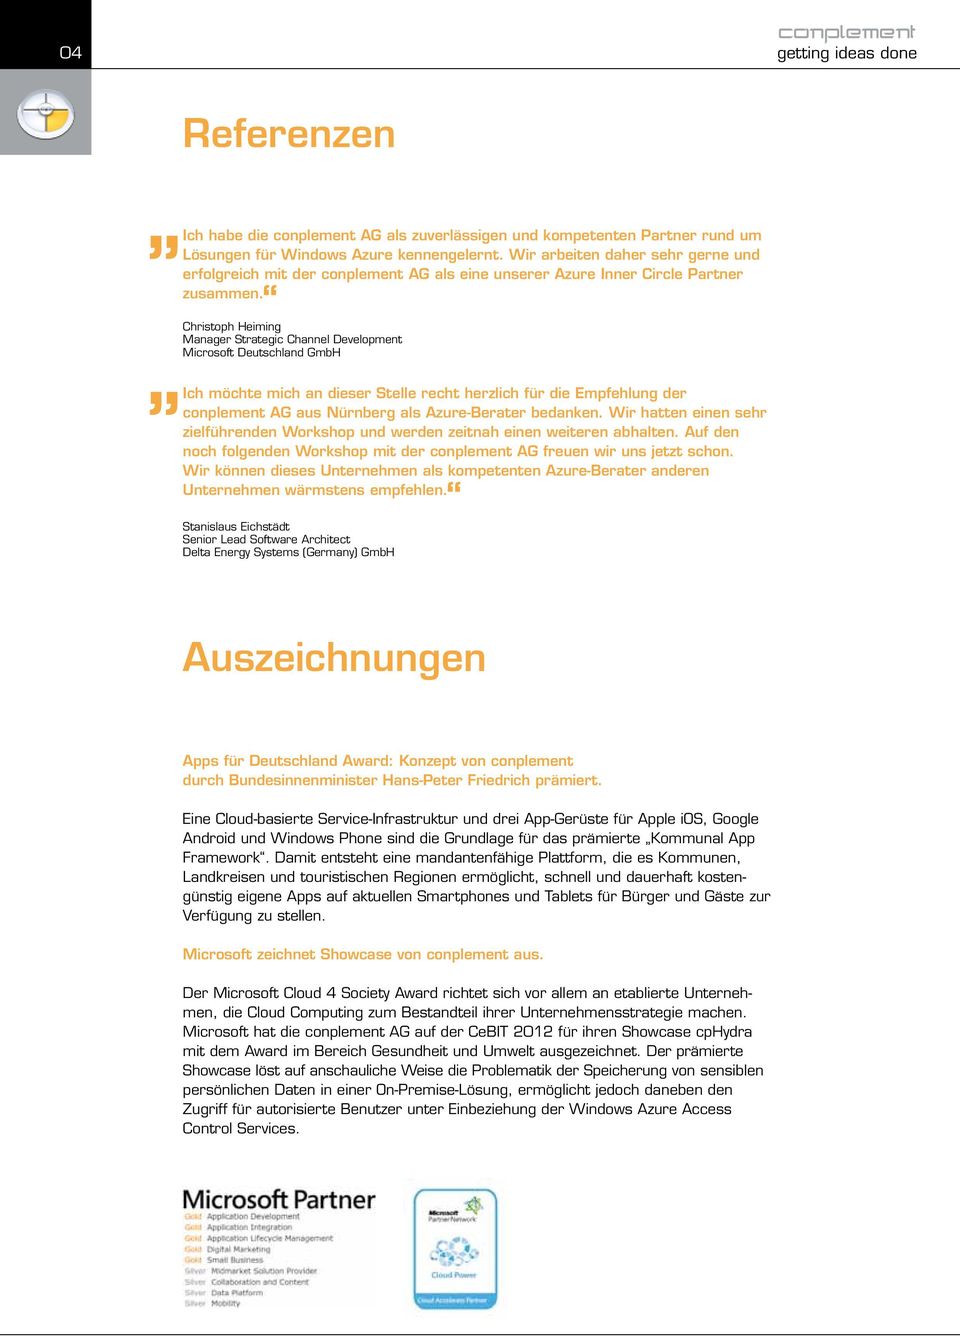 Christoph Heiming Manager Strategic Channel Development Microsoft Deutschland GmbH Ich möchte mich an dieser Stelle recht herzlich für die Empfehlung der conplement AG aus Nürnberg als Azure-Berater